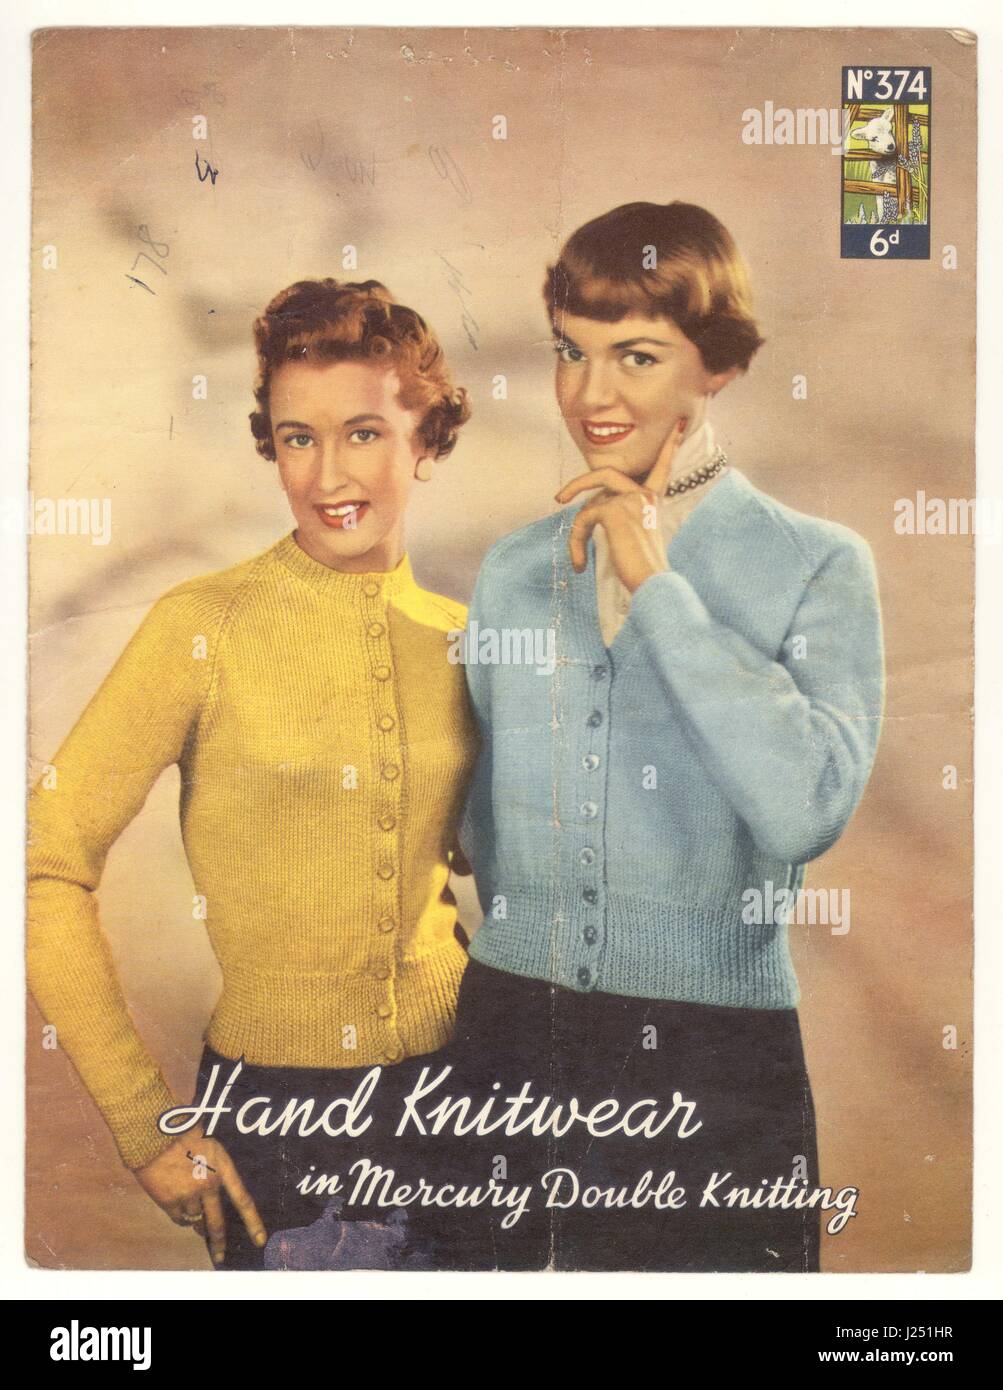 Original Strickmuster im Retro-Look, Cardigans für Damen aus den 1950er Jahren, von Lister & Co. Aus Bradford, England, Großbritannien Stockfoto